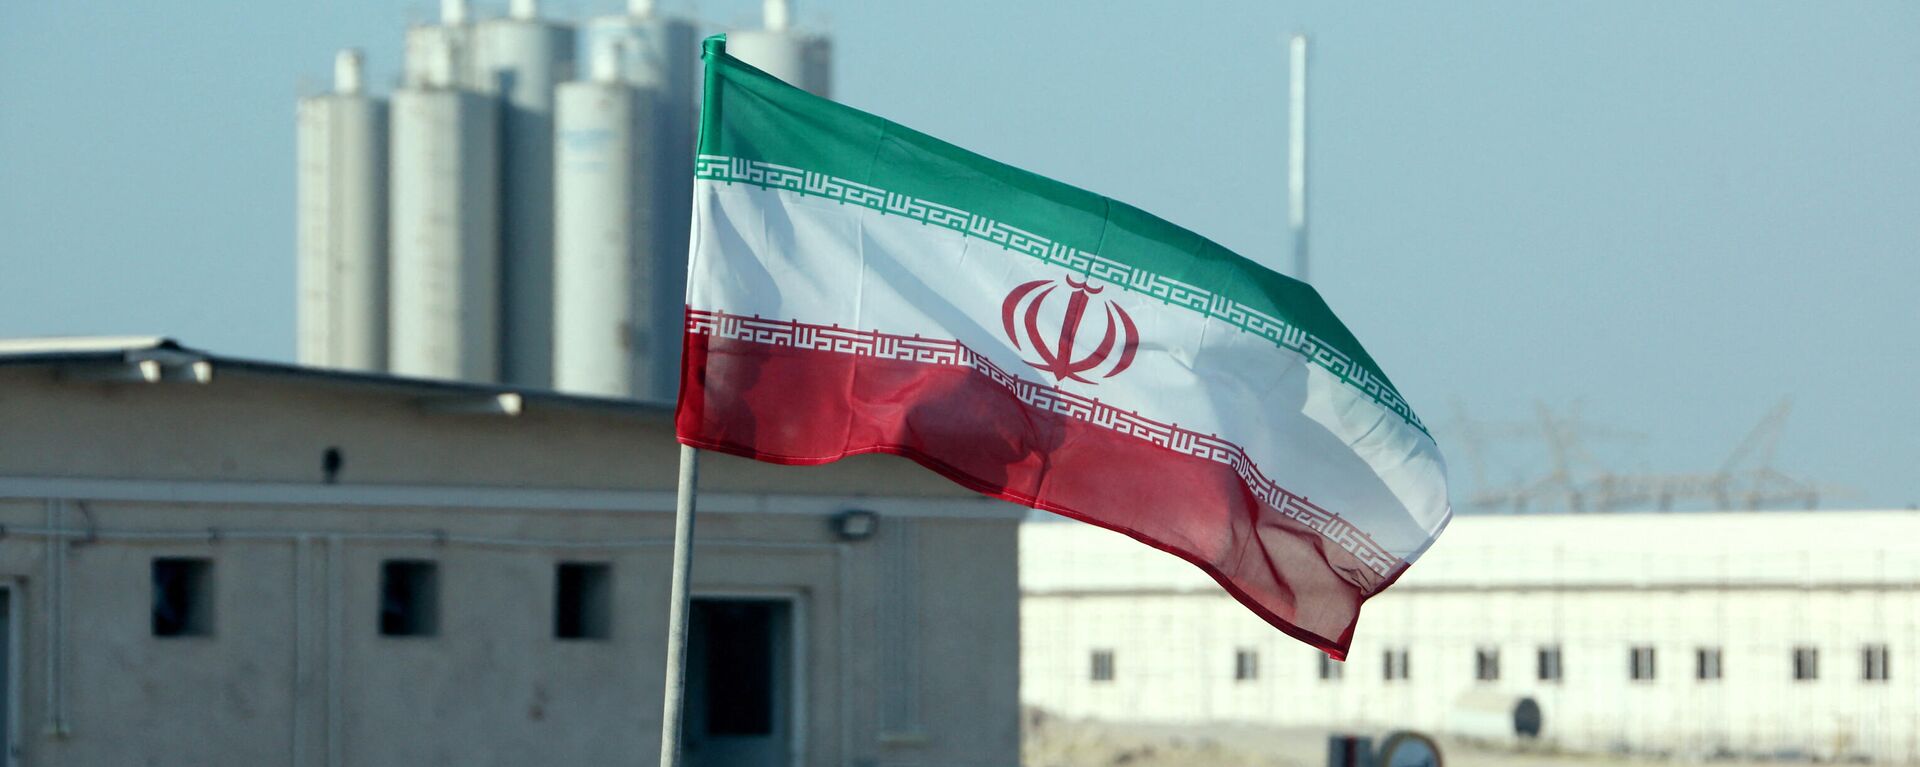 La bandera de Irán frente a una planta nuclear (archivo) - Sputnik Mundo, 1920, 10.09.2021